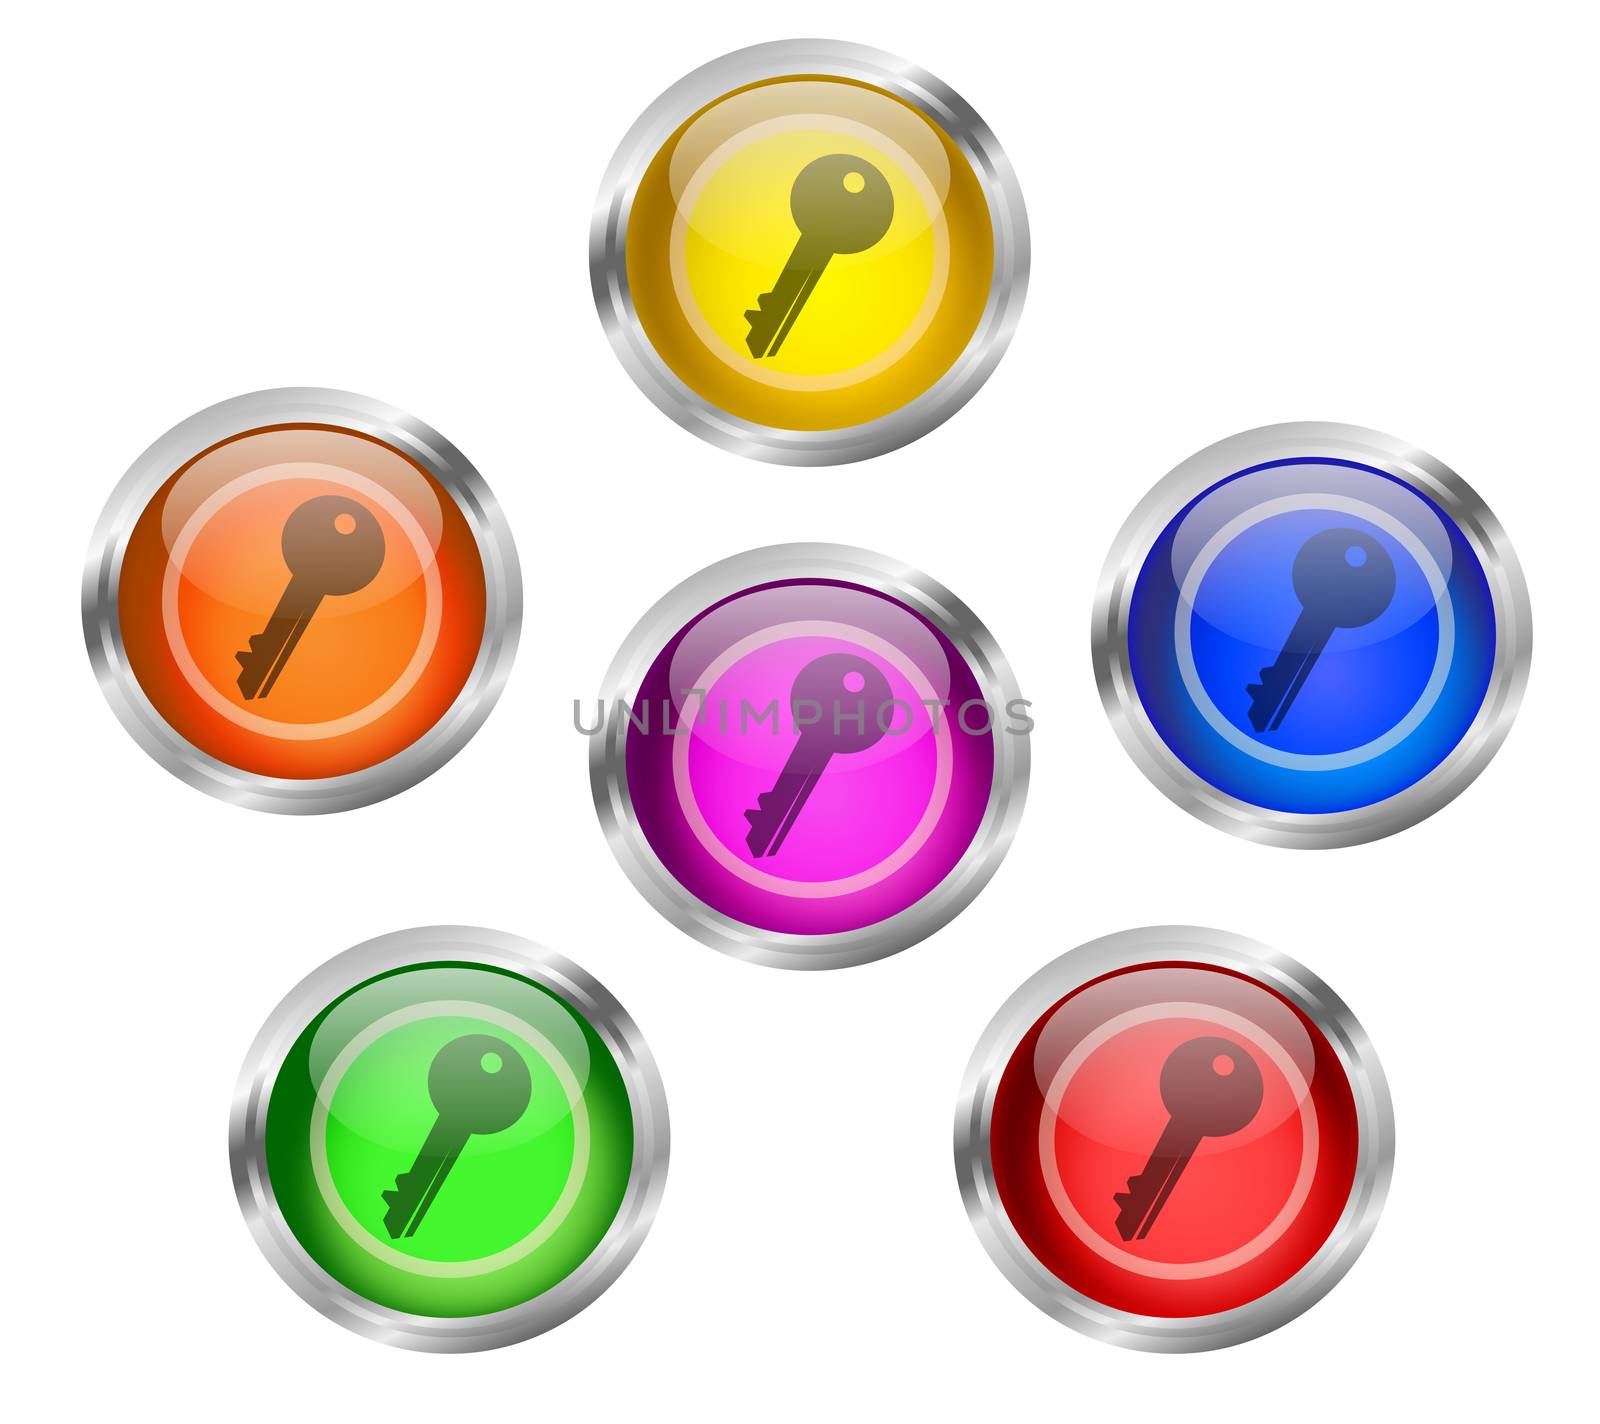 Key Icon Button by RichieThakur